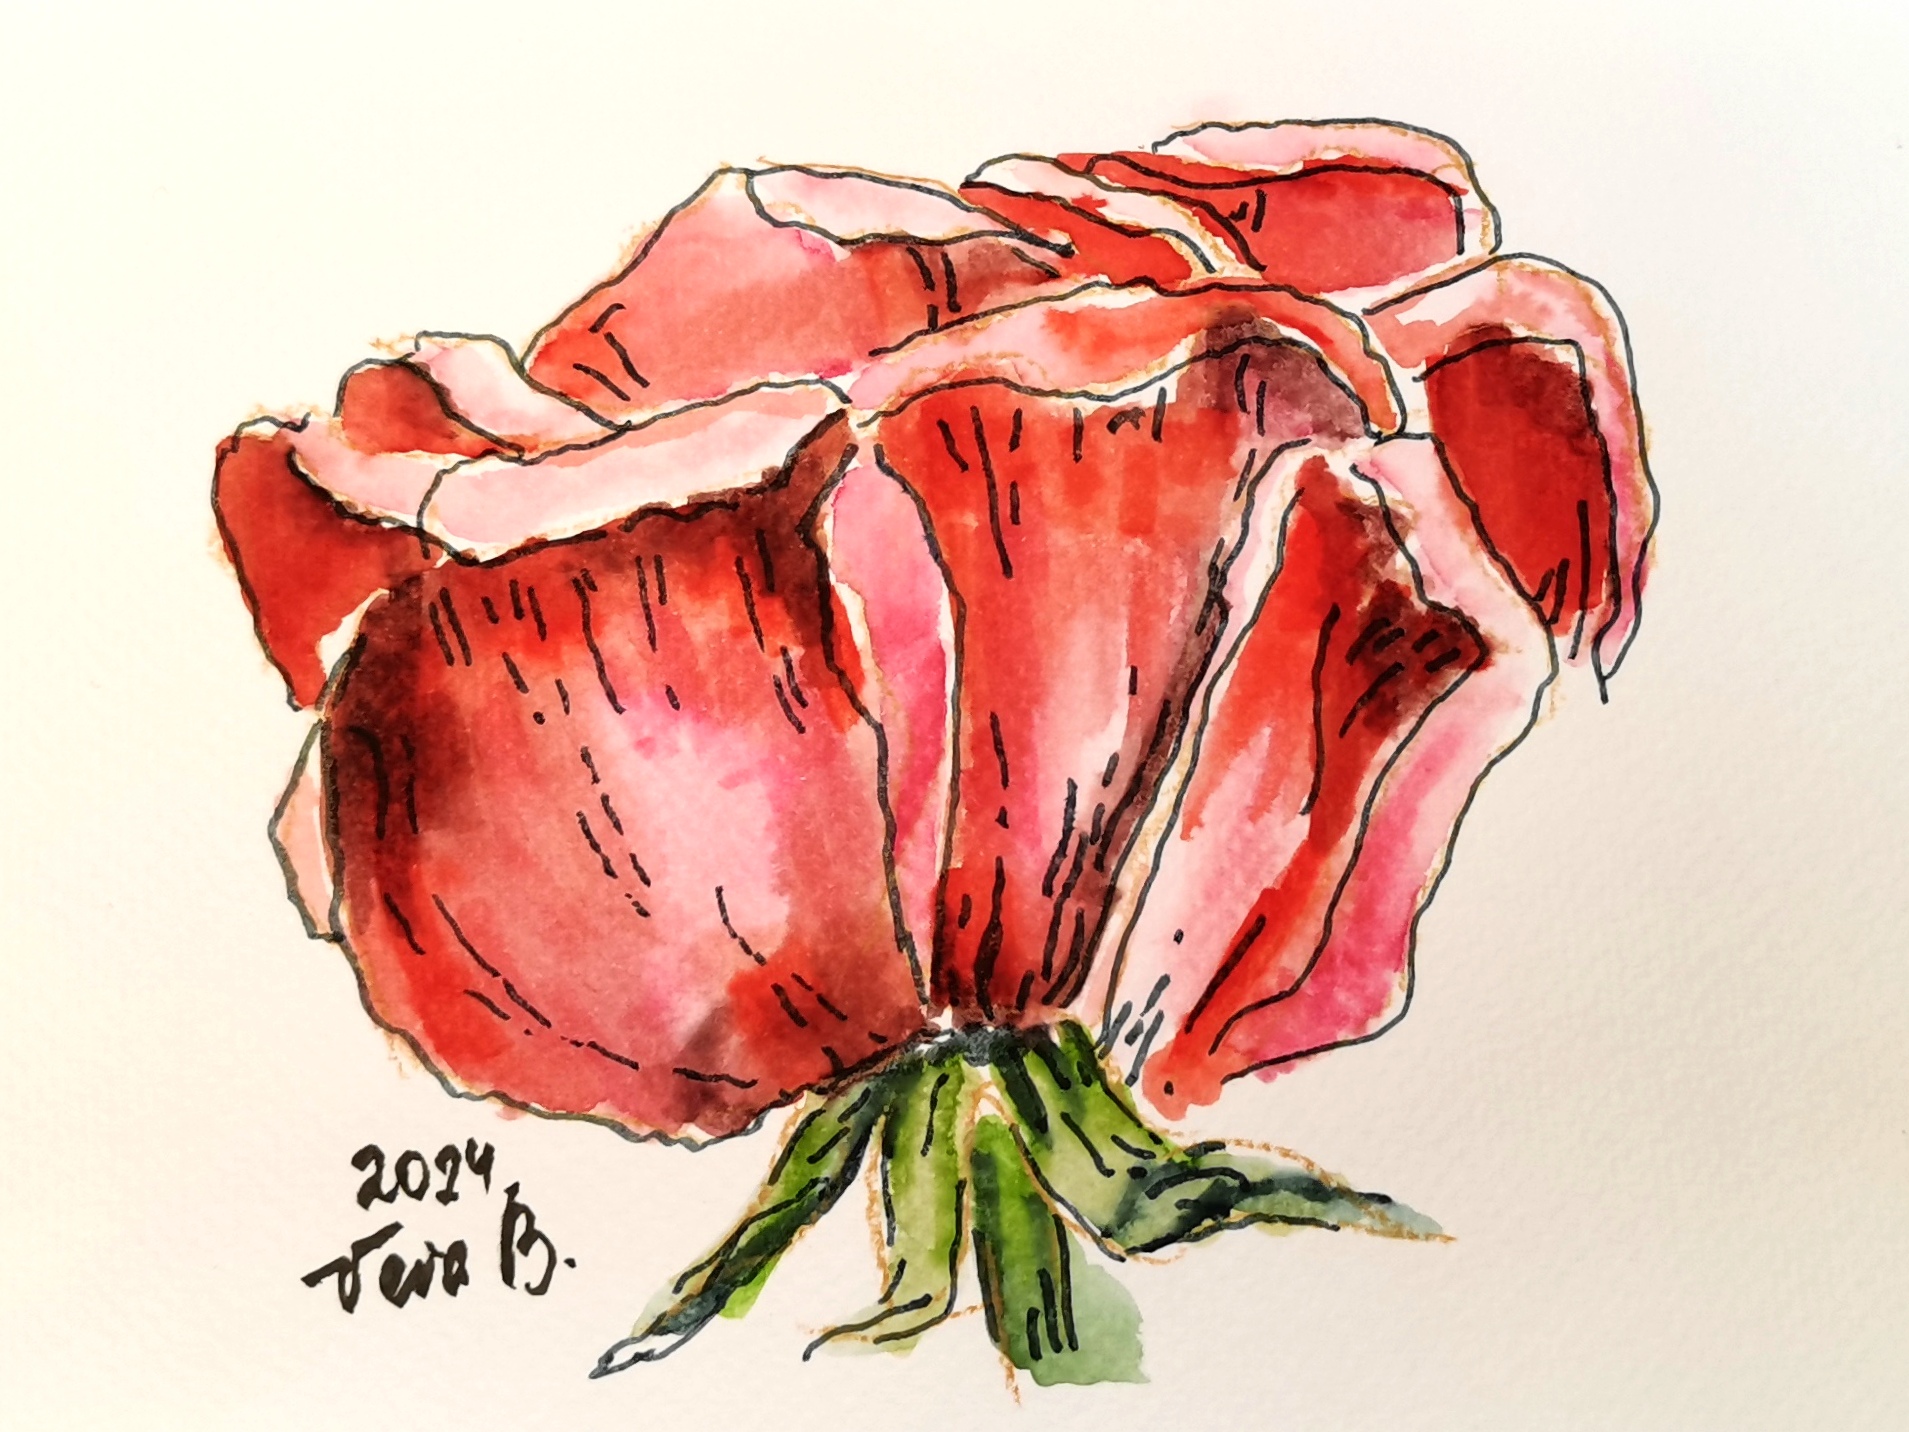 Рисунок цветка розы акварельными маркерами. Часть 1 || Пошаговое объяснение || Sketching